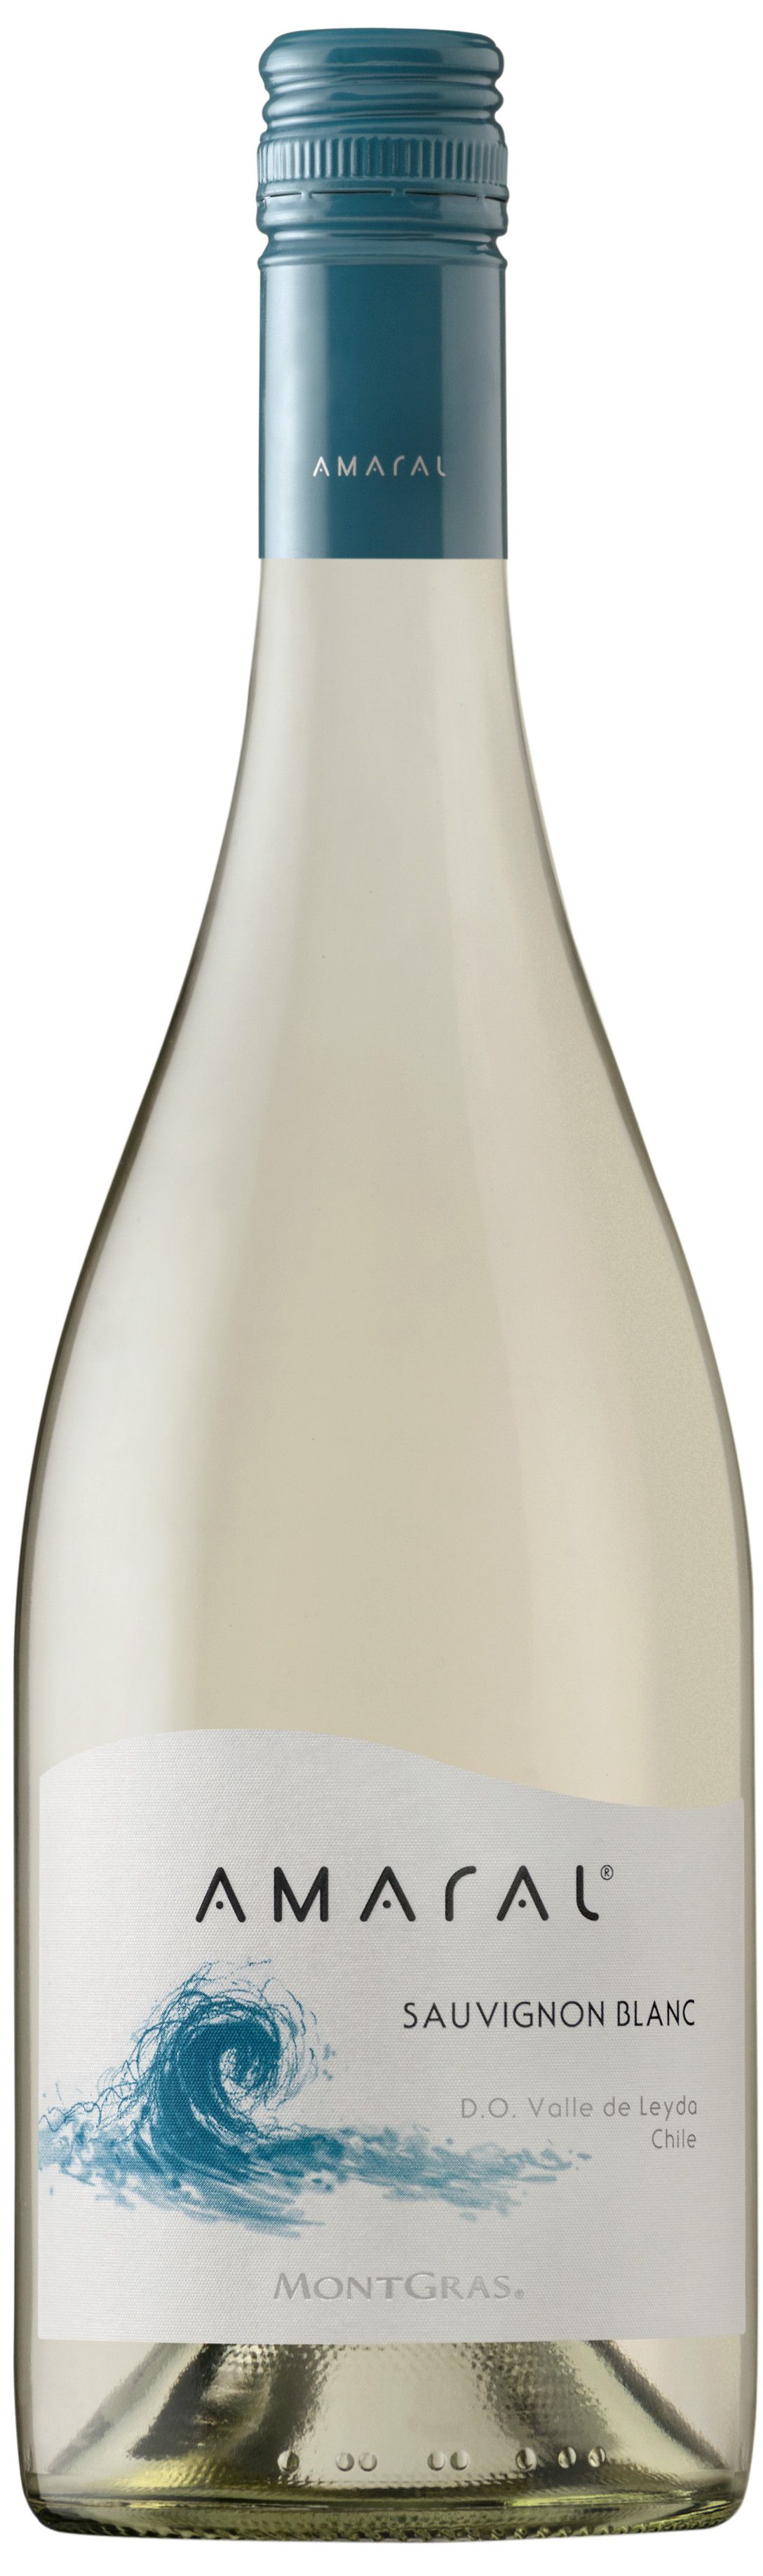 Montgras, Amaral Sauvignon Blanc, 2019